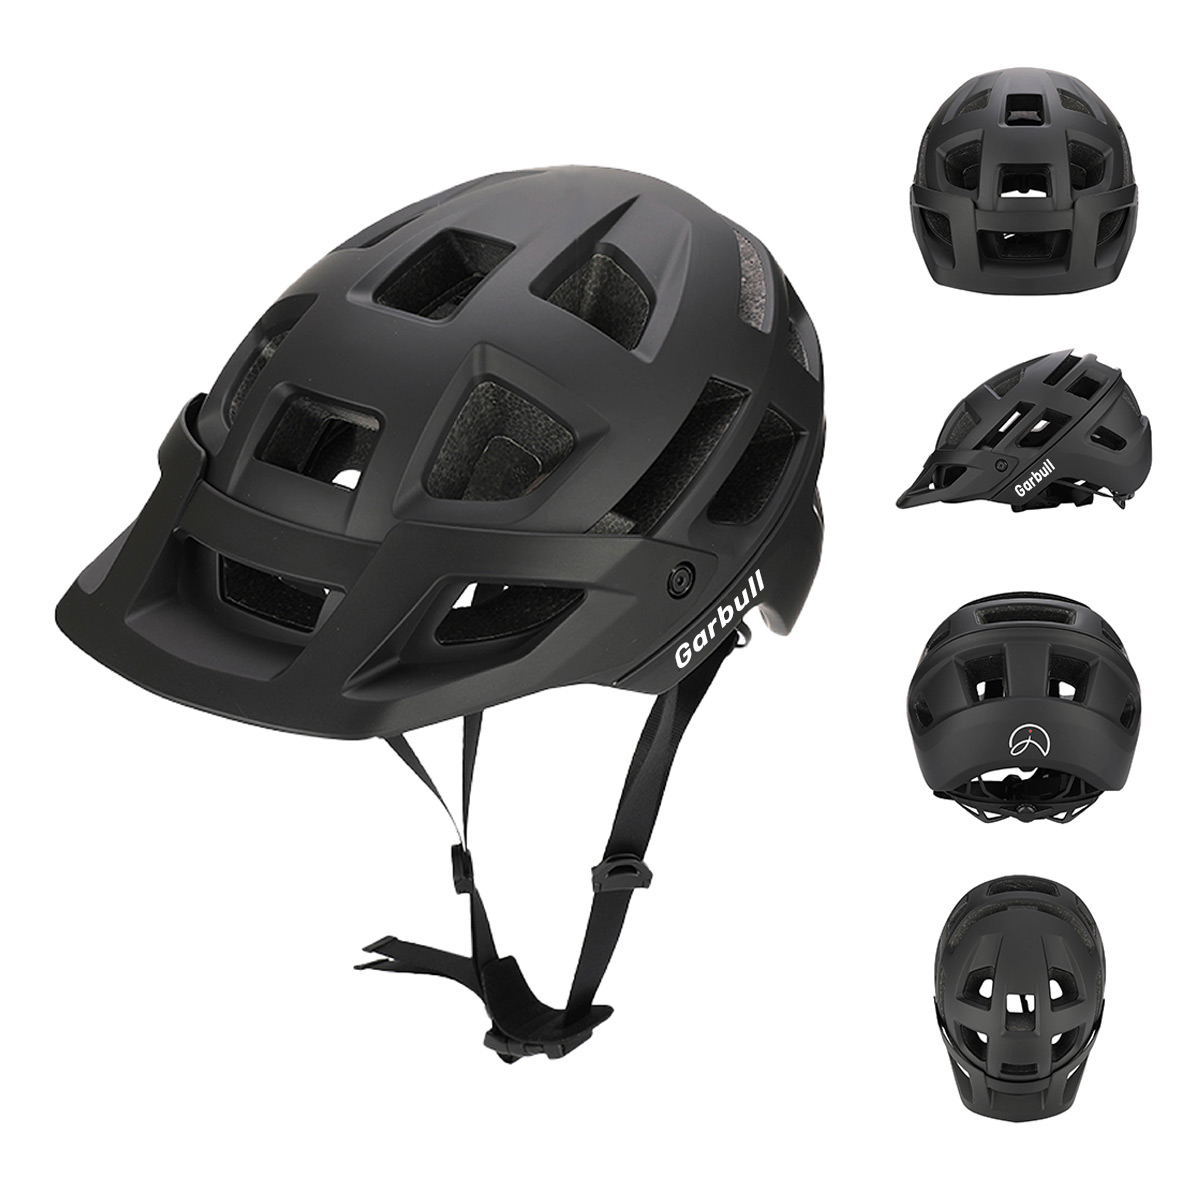 Helm PROSCENIC cm, schwarz) 55-59 Mountainbike, cm